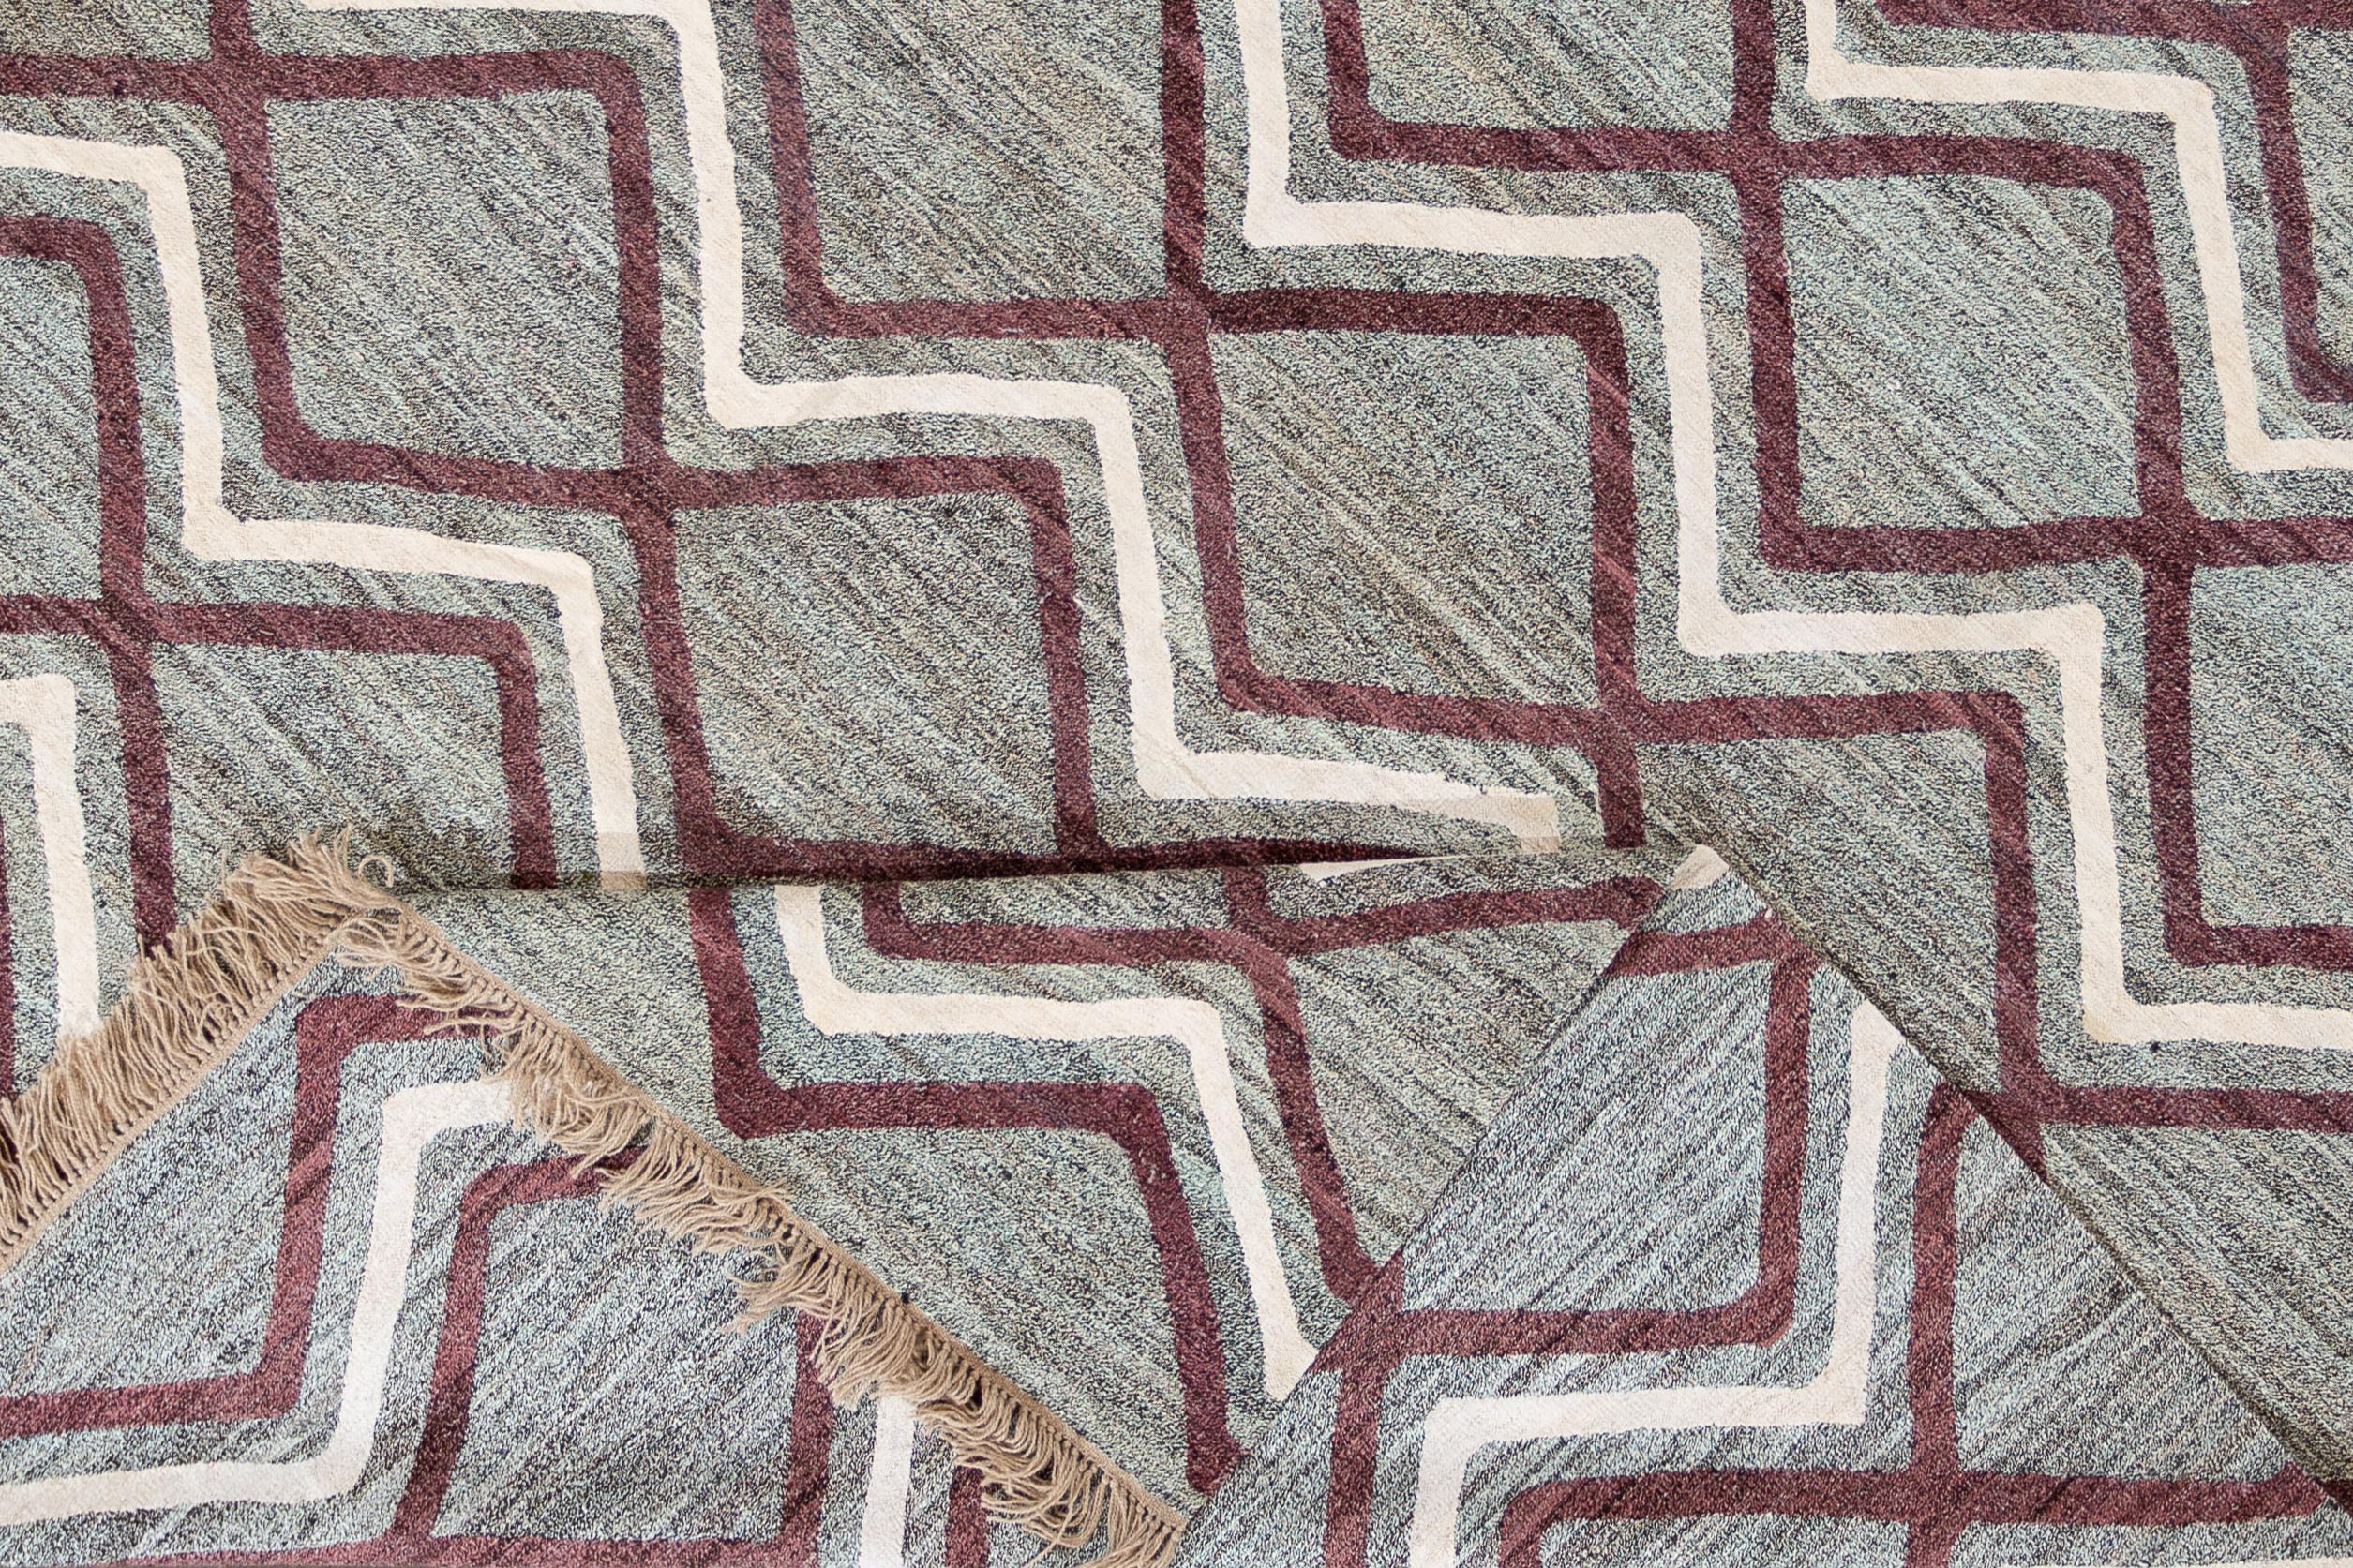 Magnifique tapis turc vintage à tissage plat, noué à la main, avec un champ argenté et un motif géométrique à rayures horizontales en violet et blanc.

Ce tapis mesure : 9'4